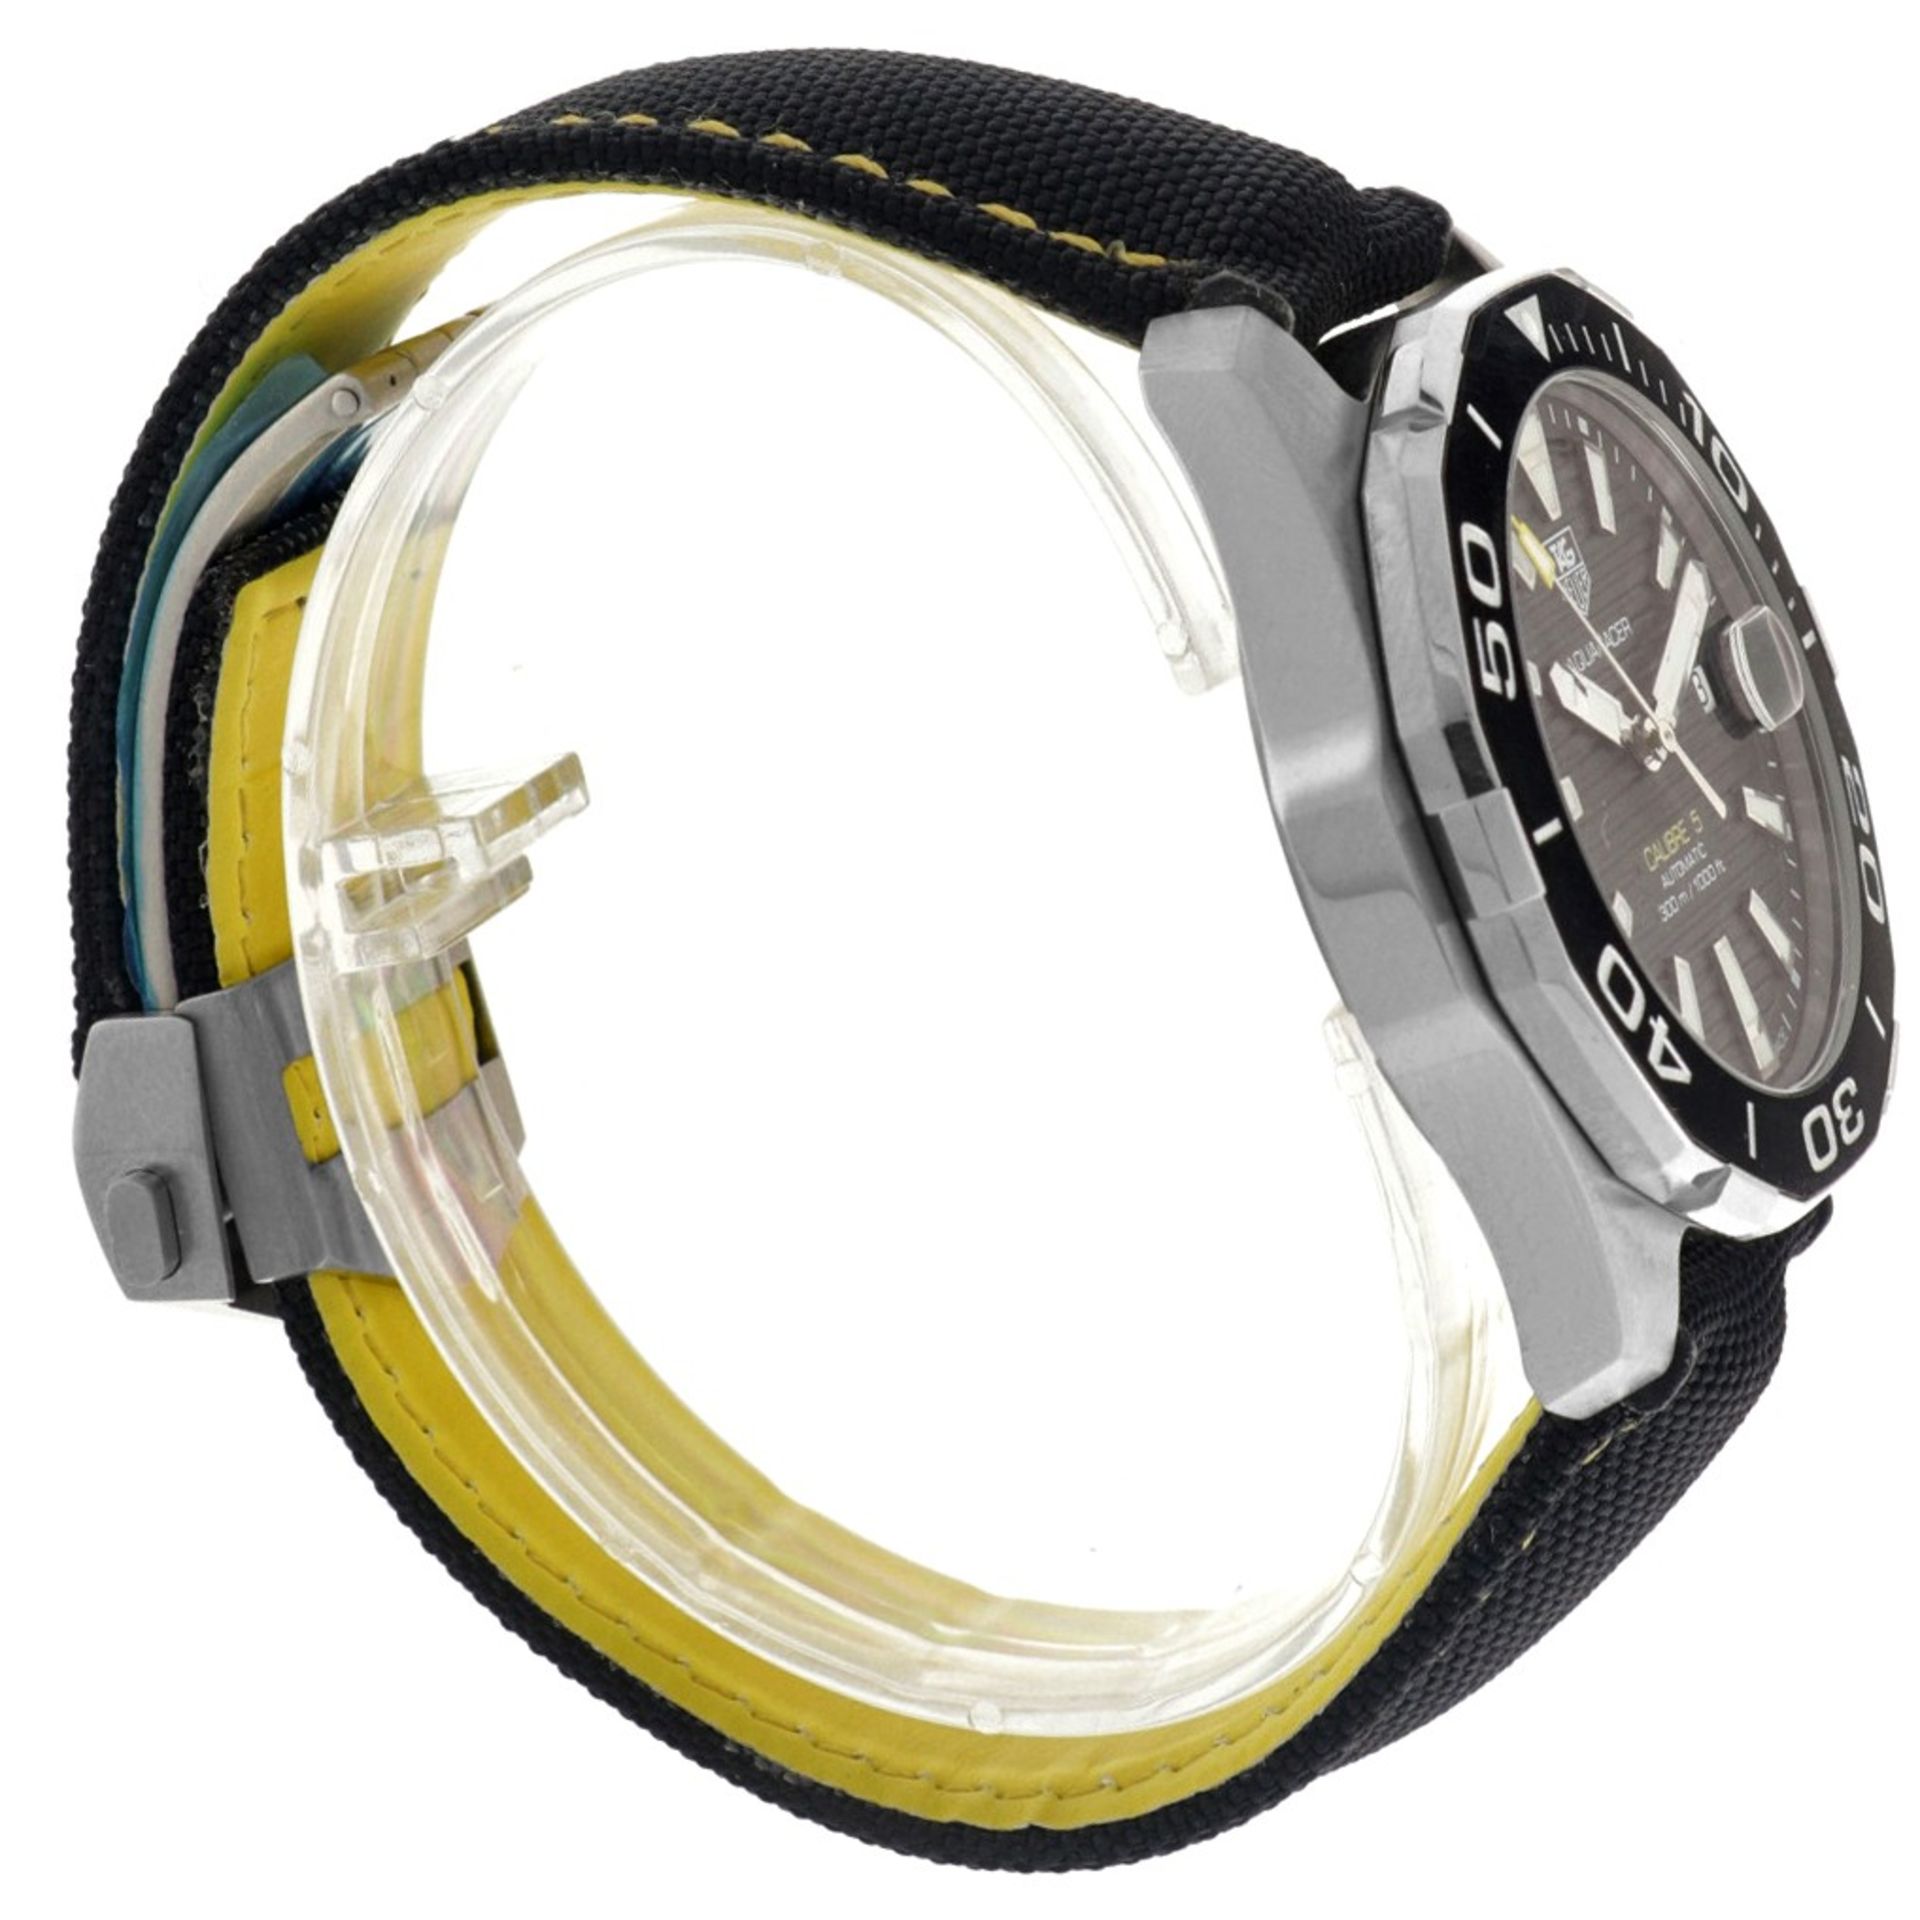 No Reserve - TAG Heuer Aquaracer 300M Calibre 5 WAY221A.FC6362 - Men's watch. - Image 4 of 6